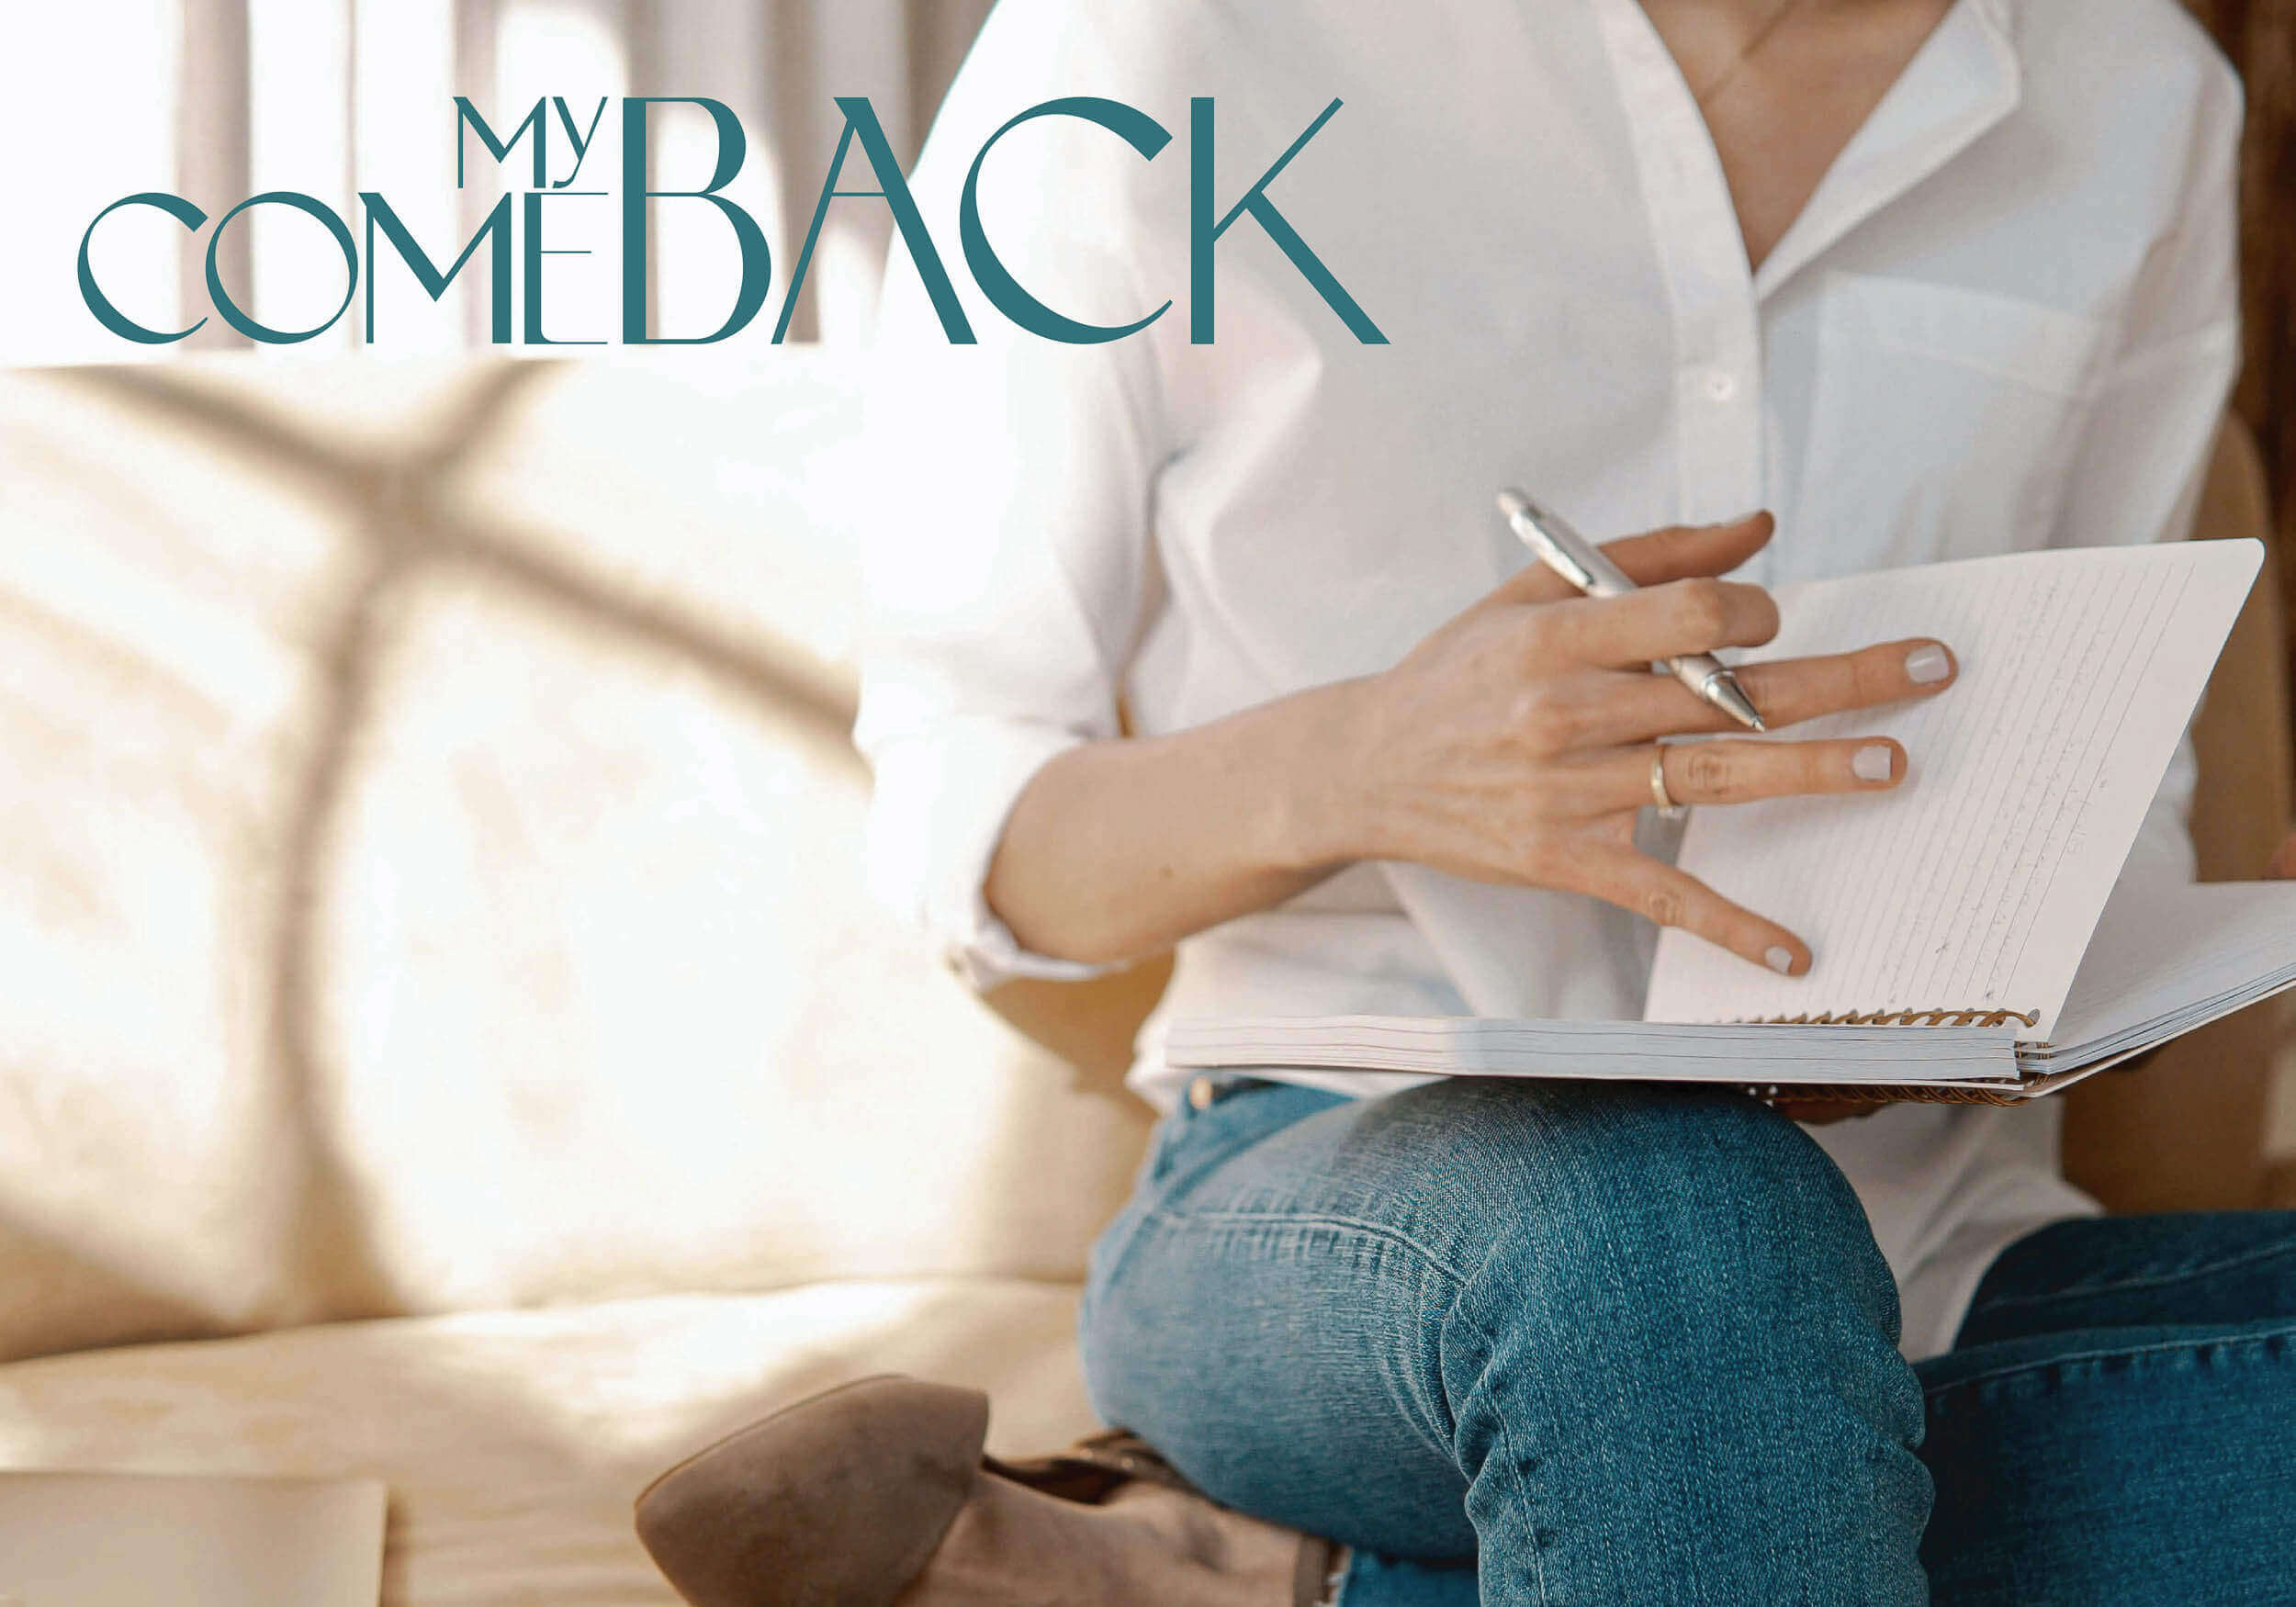 Logodesign für MyComeback auf einem Bild mit einer Frau die in ein Buch schreibt